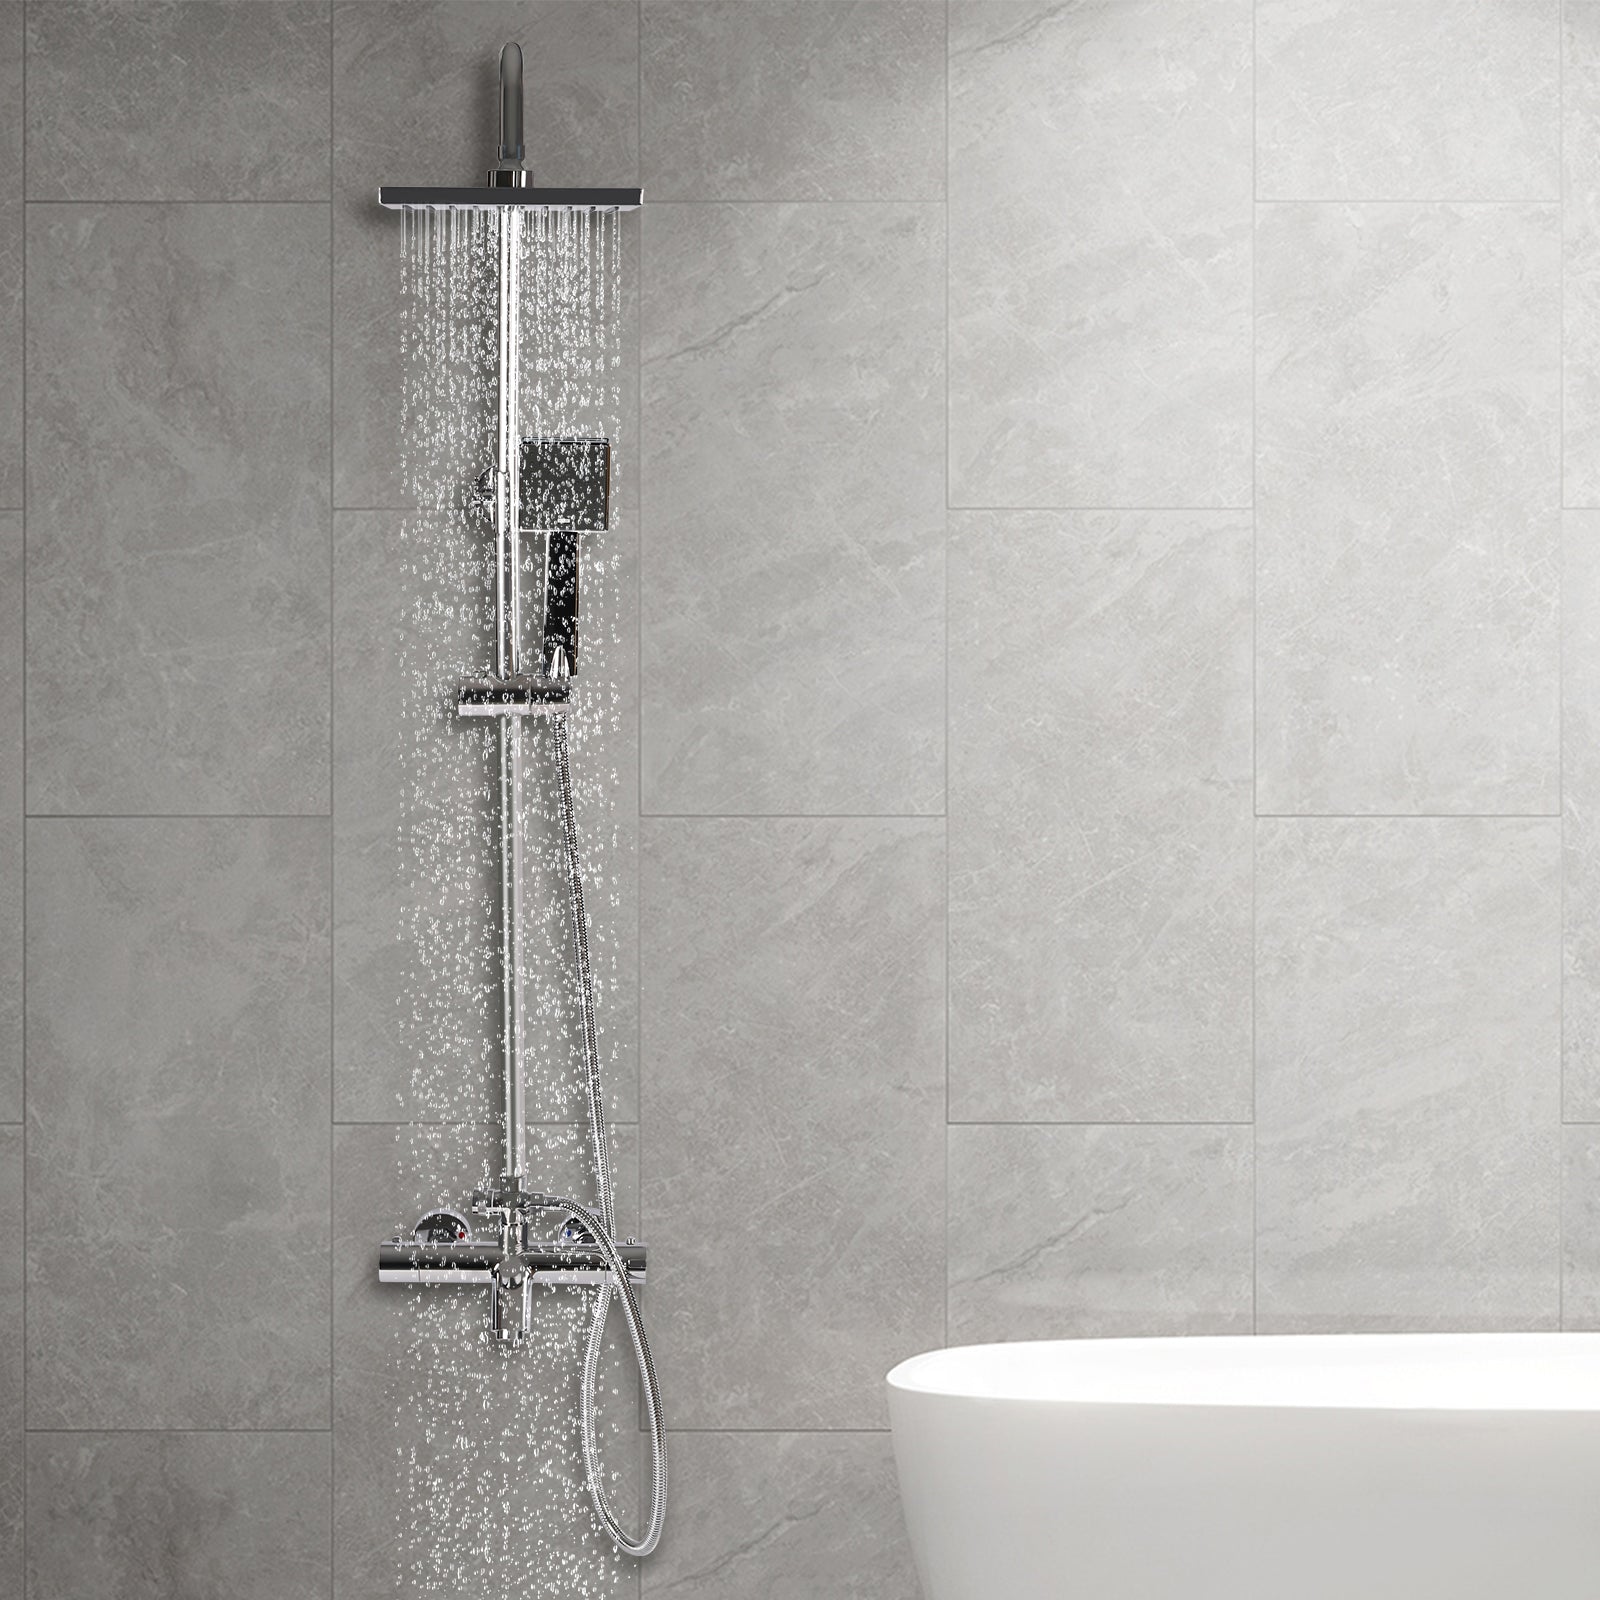 Duschsystem mit Thermostat, 304 Edelstahl Regen Dusche Dusche Armatur Set Bad Wasserhahn Thermostat Kupfer für Badezimmer